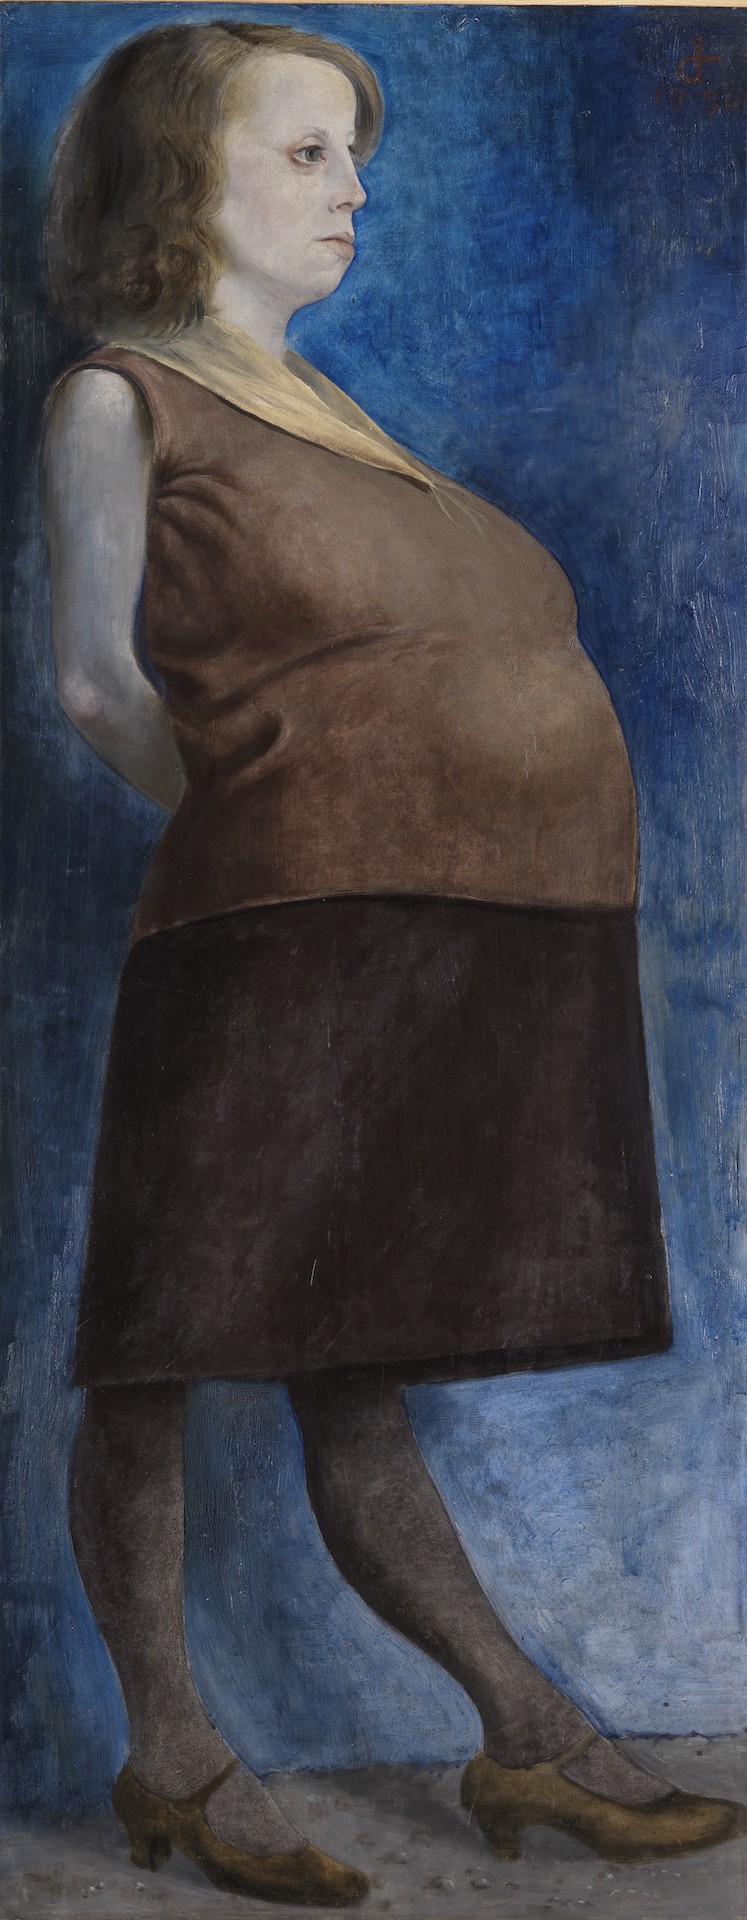 Abbildung des Portrait der Schwangeren von Otto Dix. Die Frau trägt ein blaues Kleid und steht vor einem blauen Hintergrund.